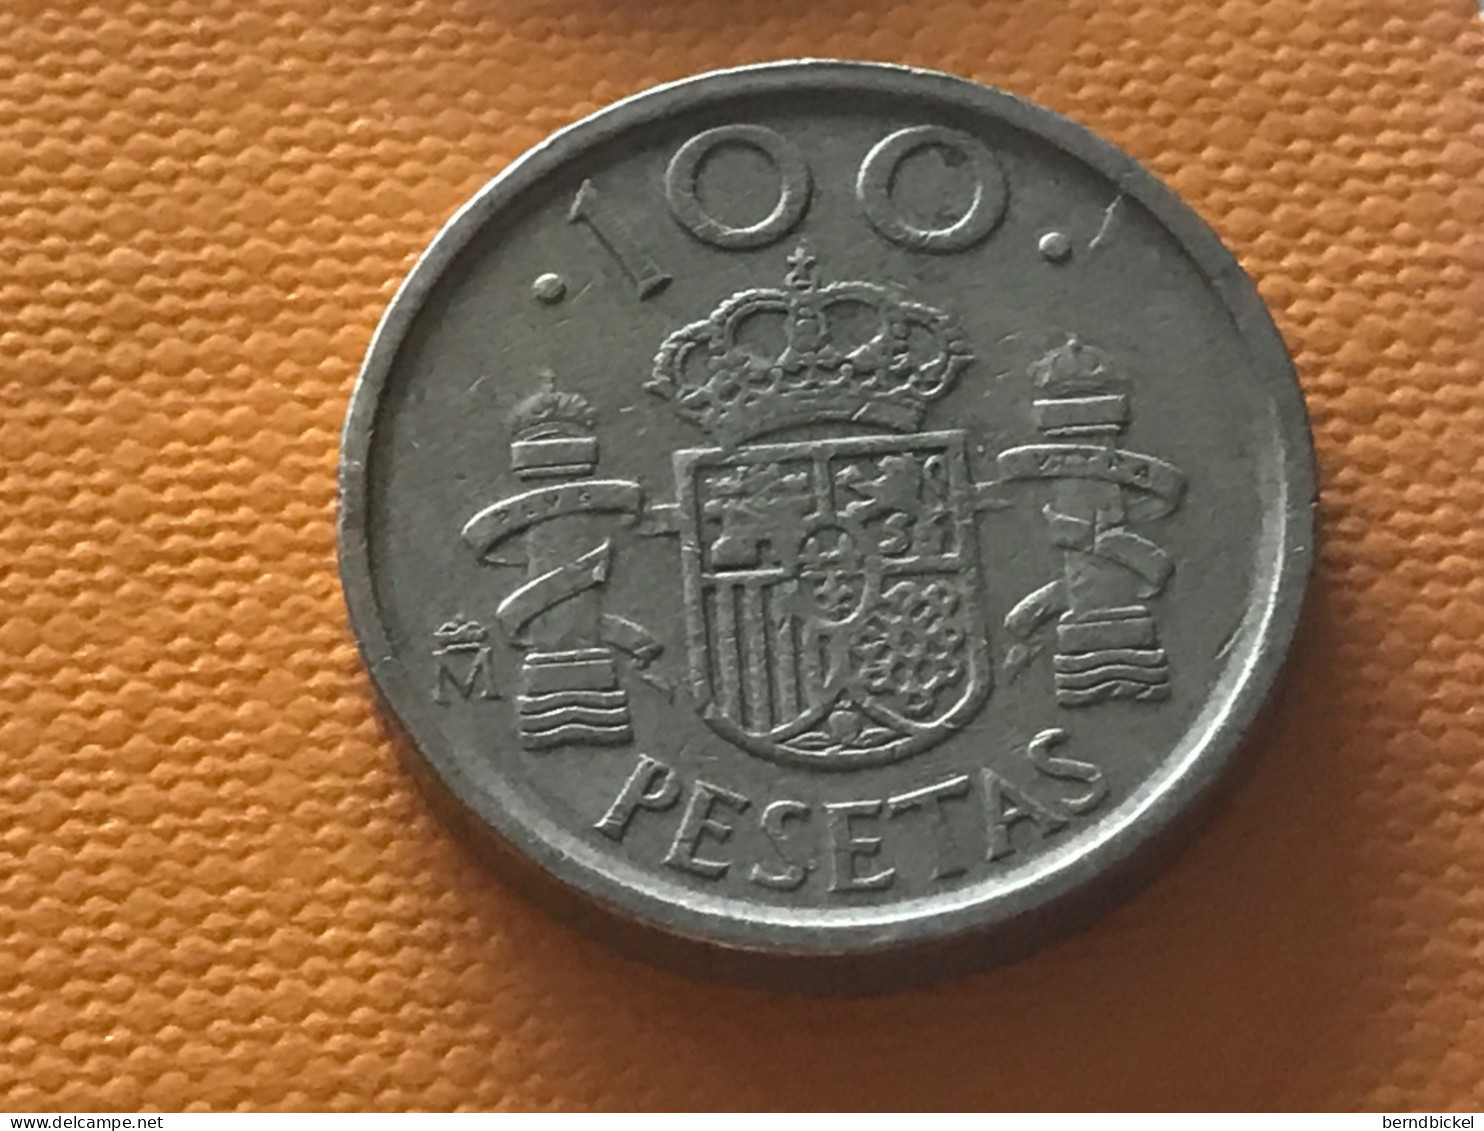 Münze Münzen Umlaufmünze Spanien 100 Pesetas 1992 - 100 Peseta